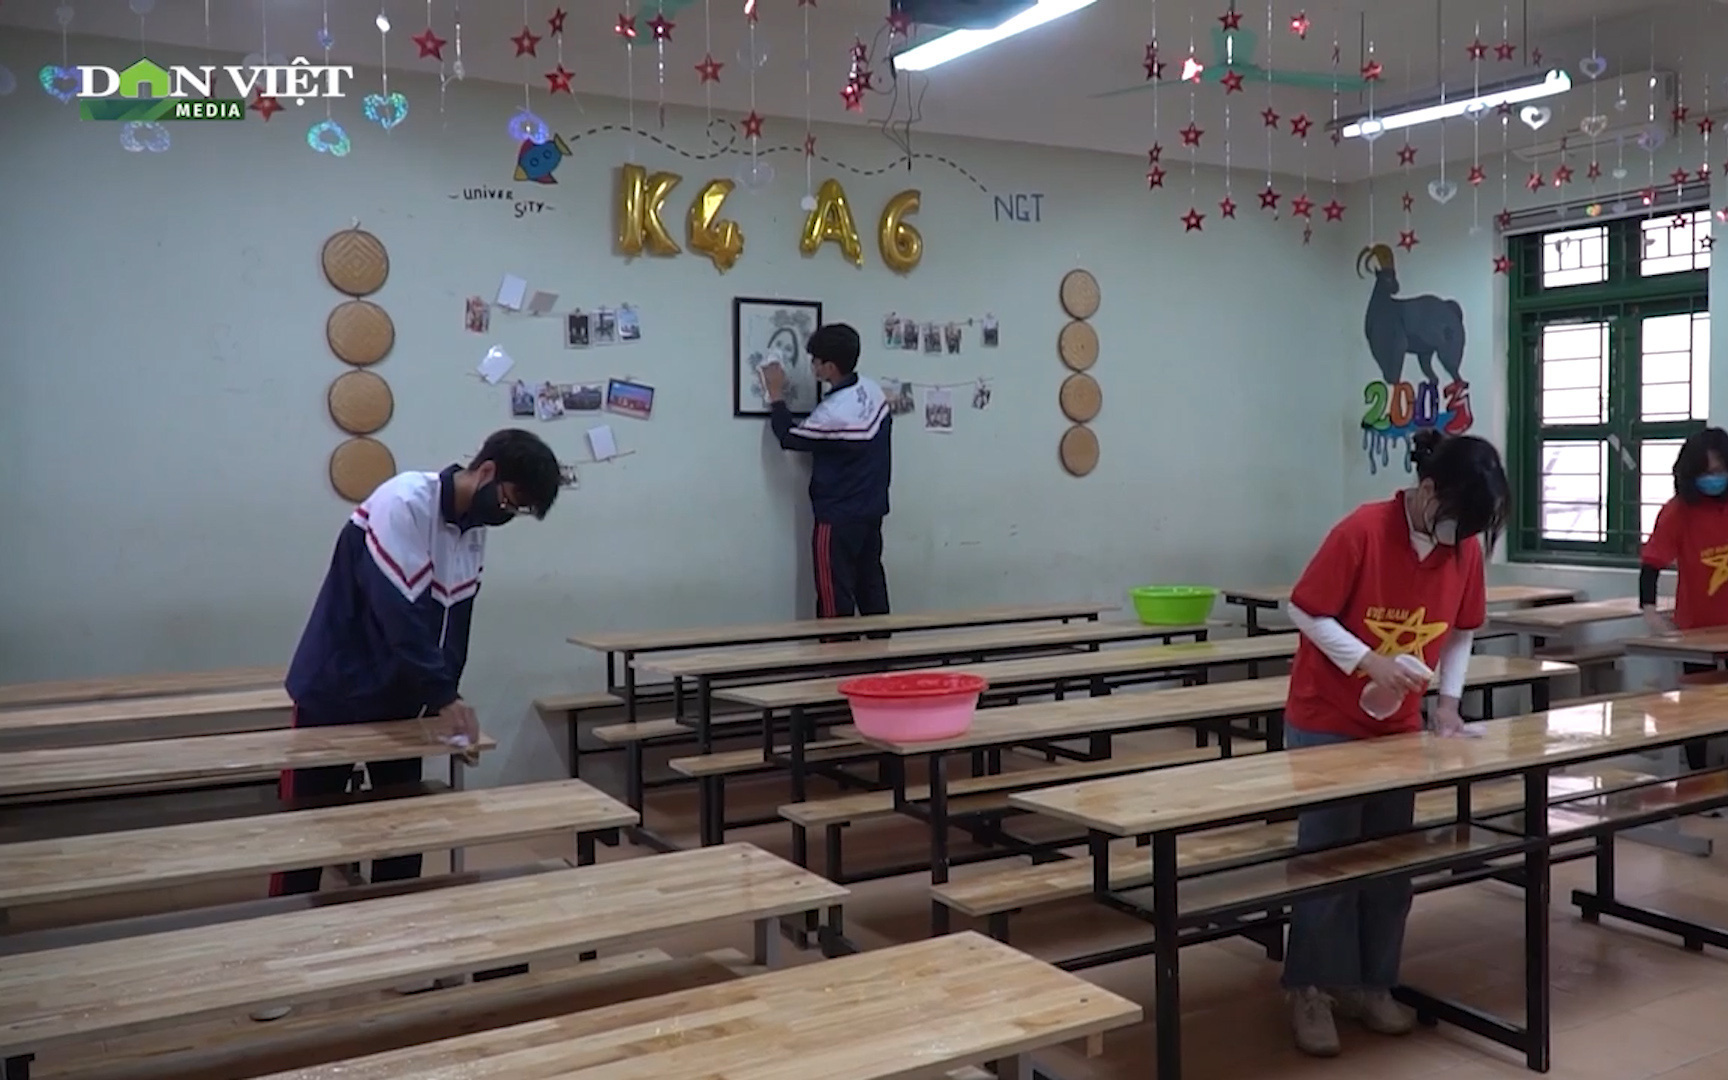 [TRỰC TIẾP] Ngày đầu tiên Thành phố Hà Nội cho học sinh quay trở lại trường sau thời gian nghỉ phòng dịch Covid 19